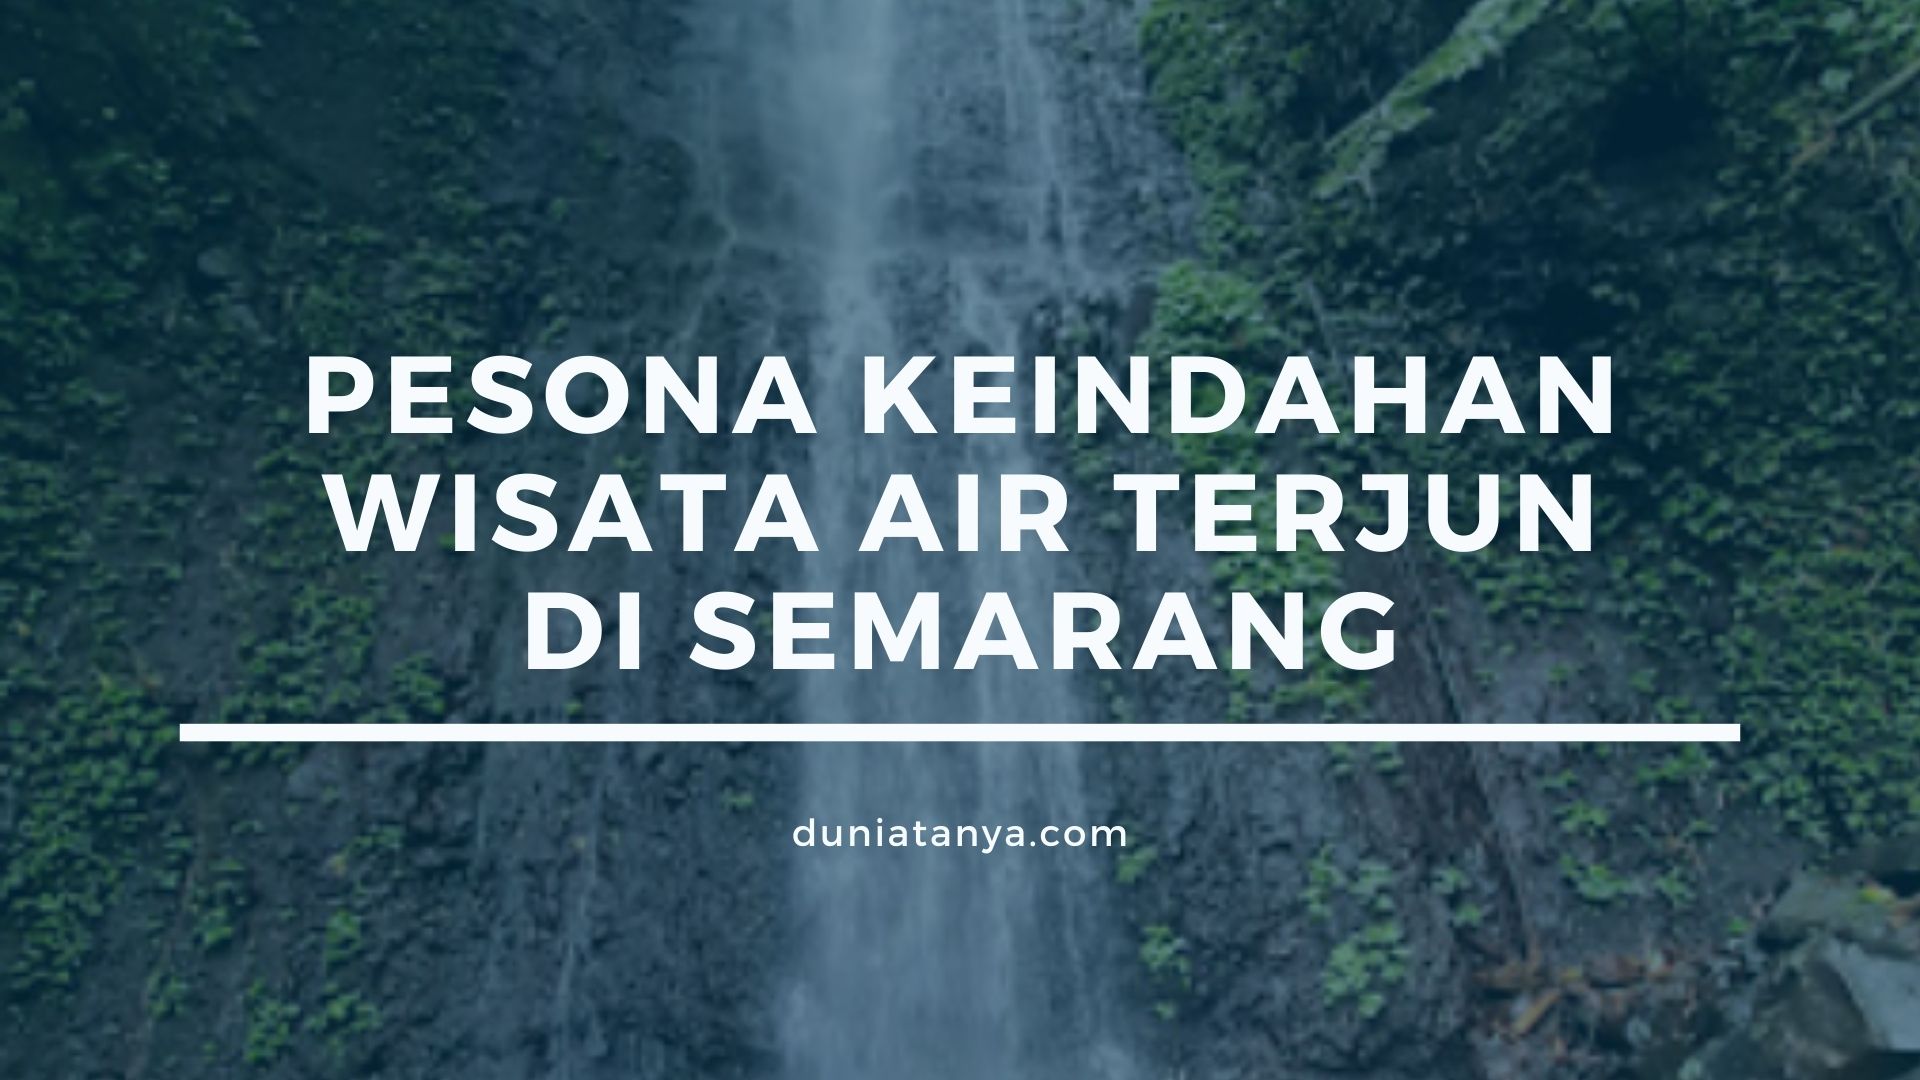 You are currently viewing Pesona Keindahan Wisata Air Terjun Di Semarang